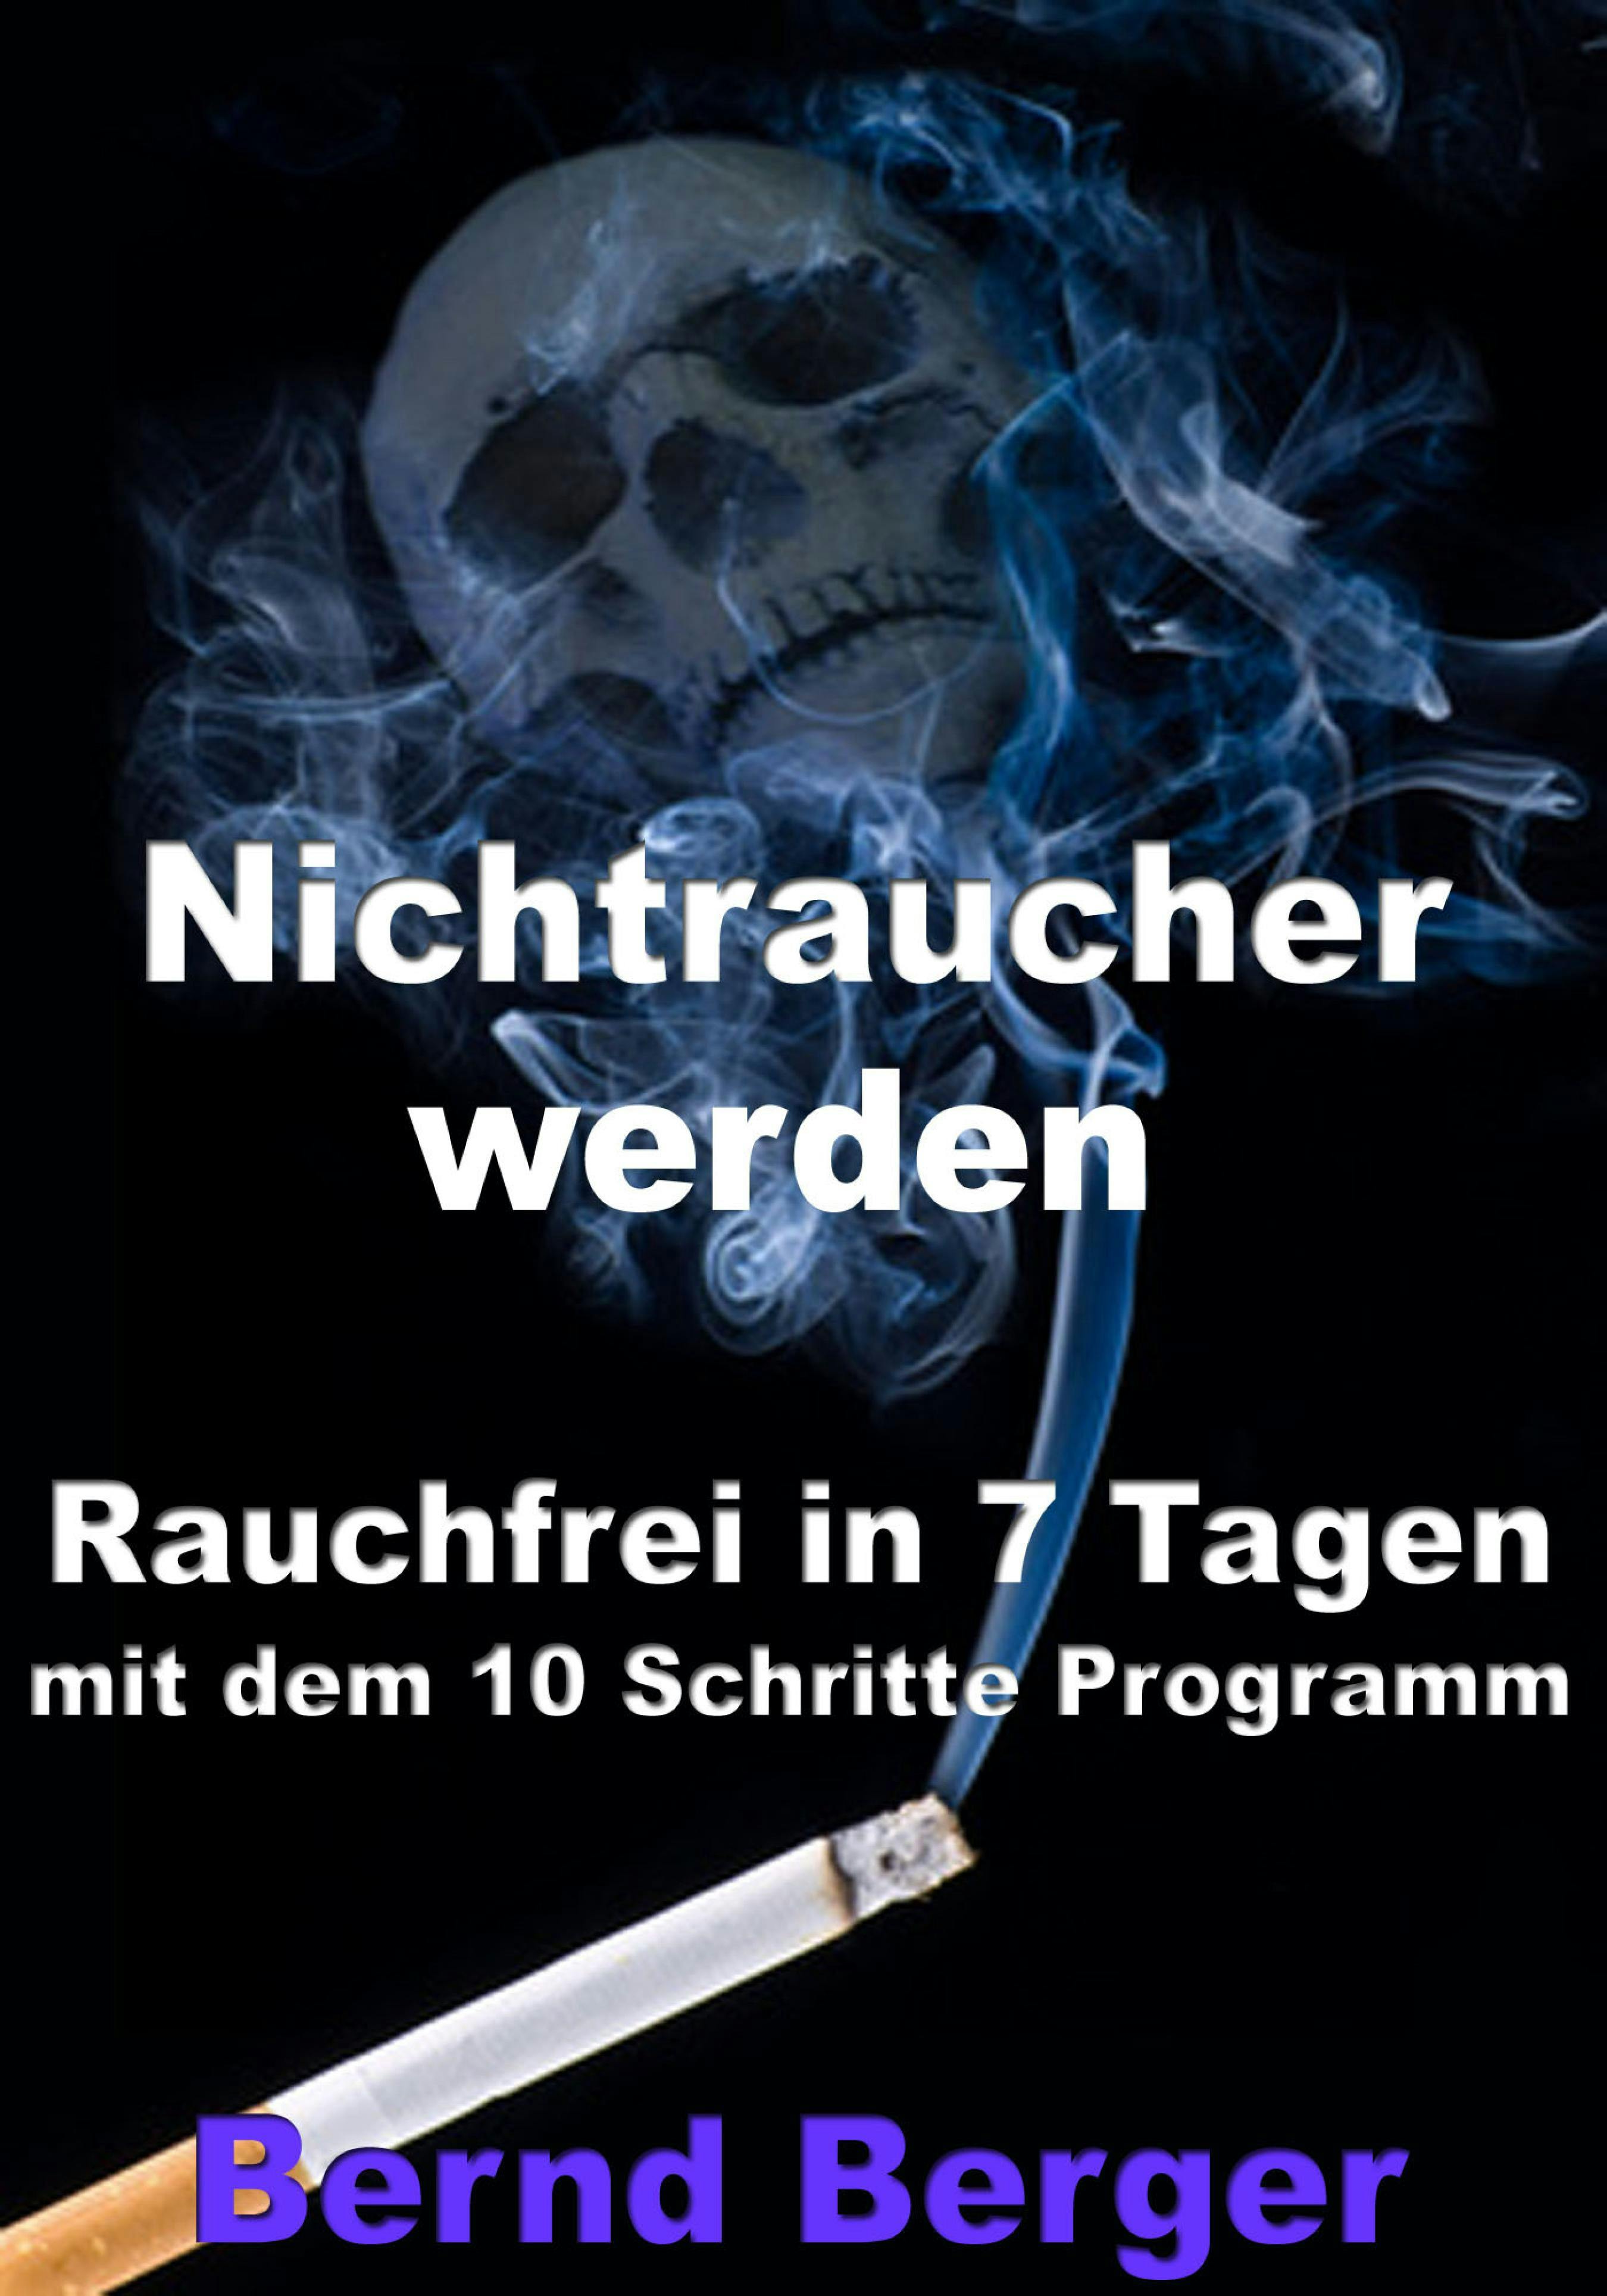 Nichtraucher werden - Rauchfrei in 7 Tagen mit dem 10 Schritte Programm - Bernd Berger